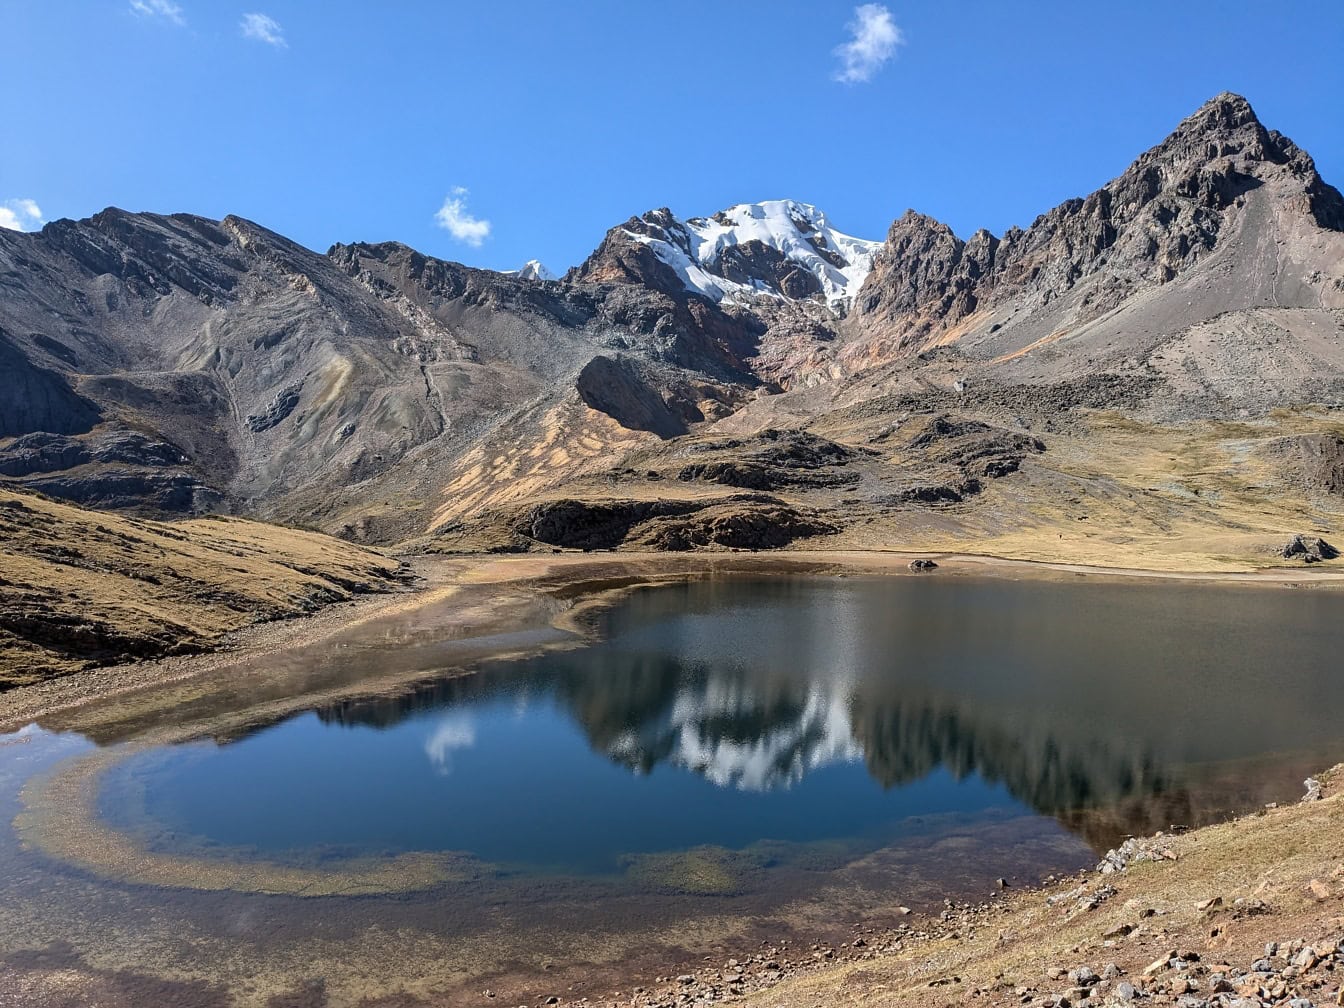 ทะเลสาบบนภูเขาที่ Paso de Carhuac pass ในเทือกเขา Cordillera Huayhuash ในเปรู ซึ่งเป็นทิวทัศน์ที่สวยงามของอเมริกาใต้